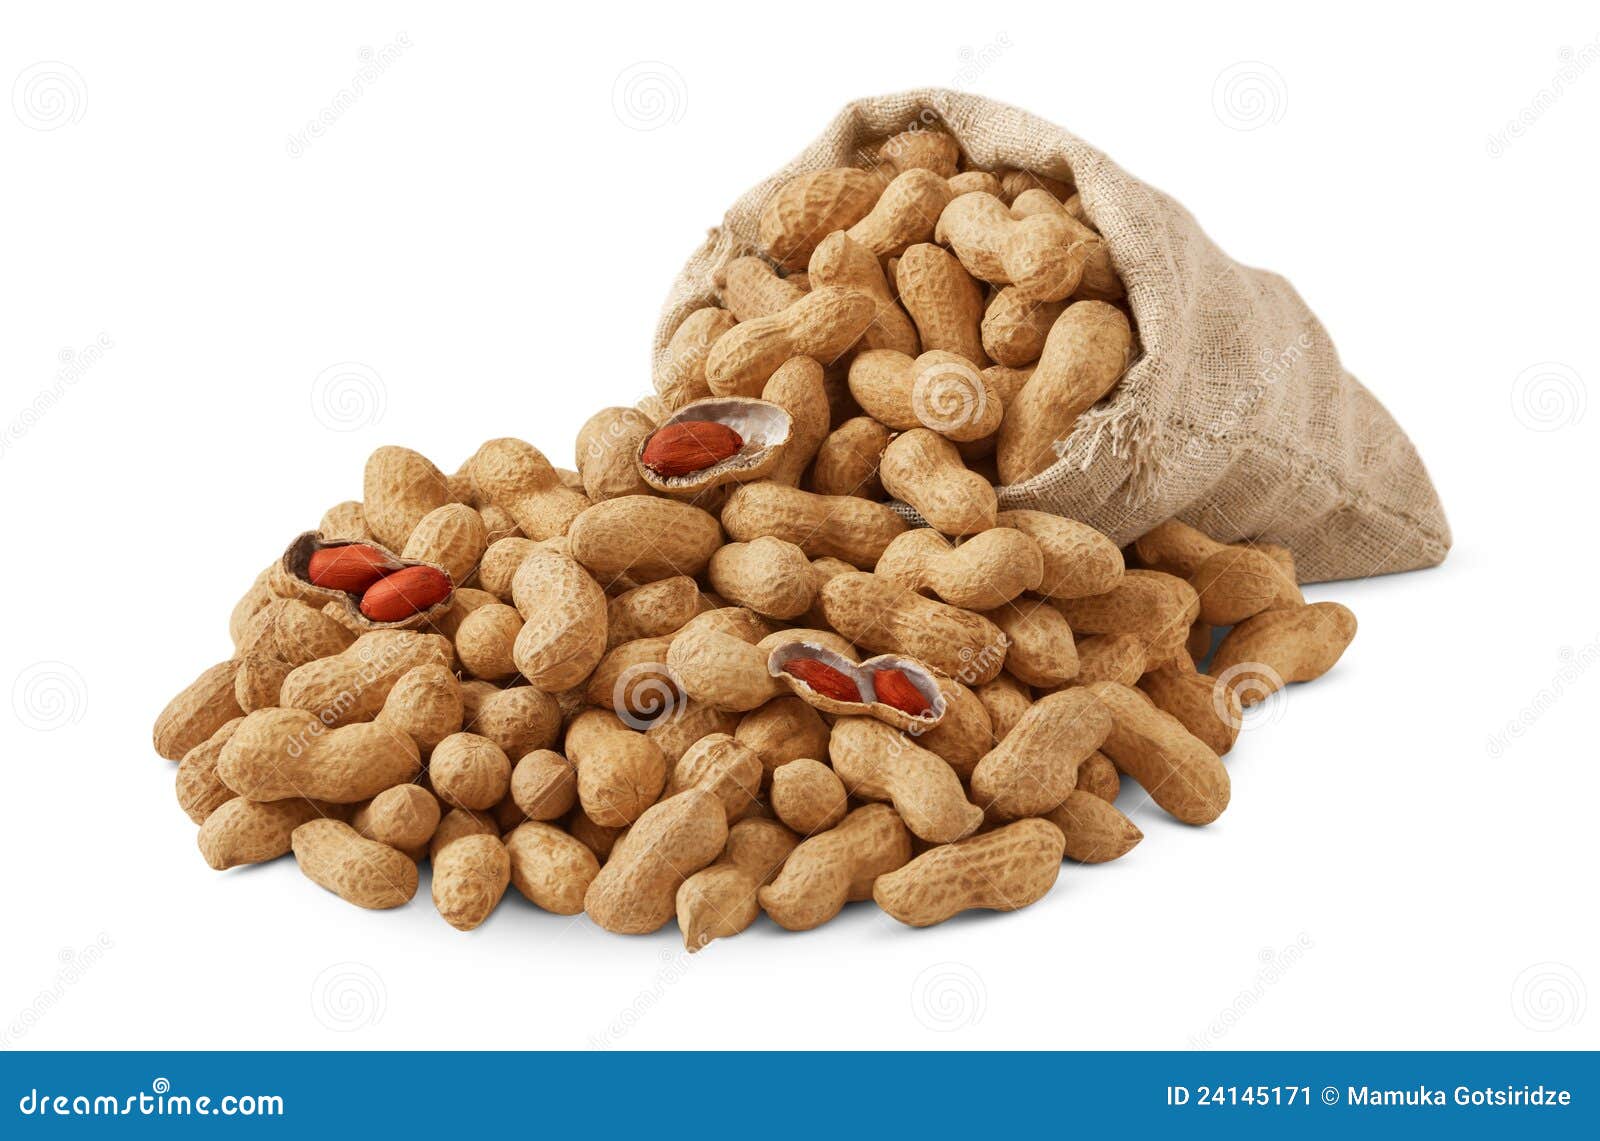 Planters Salted Peanuts or Honey Roasted peanuts Bag 4 oz | eBay